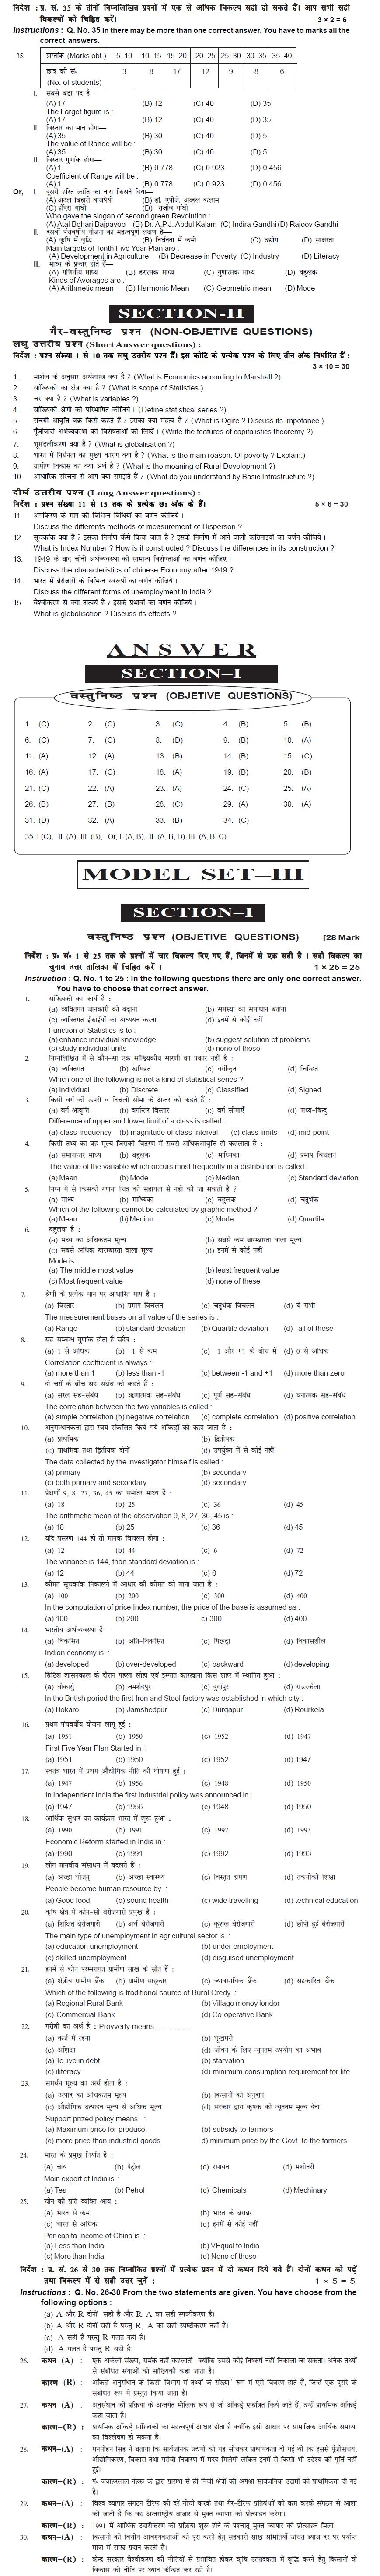 Bihar Board Class XI Commerce Model Question Papers - Economics